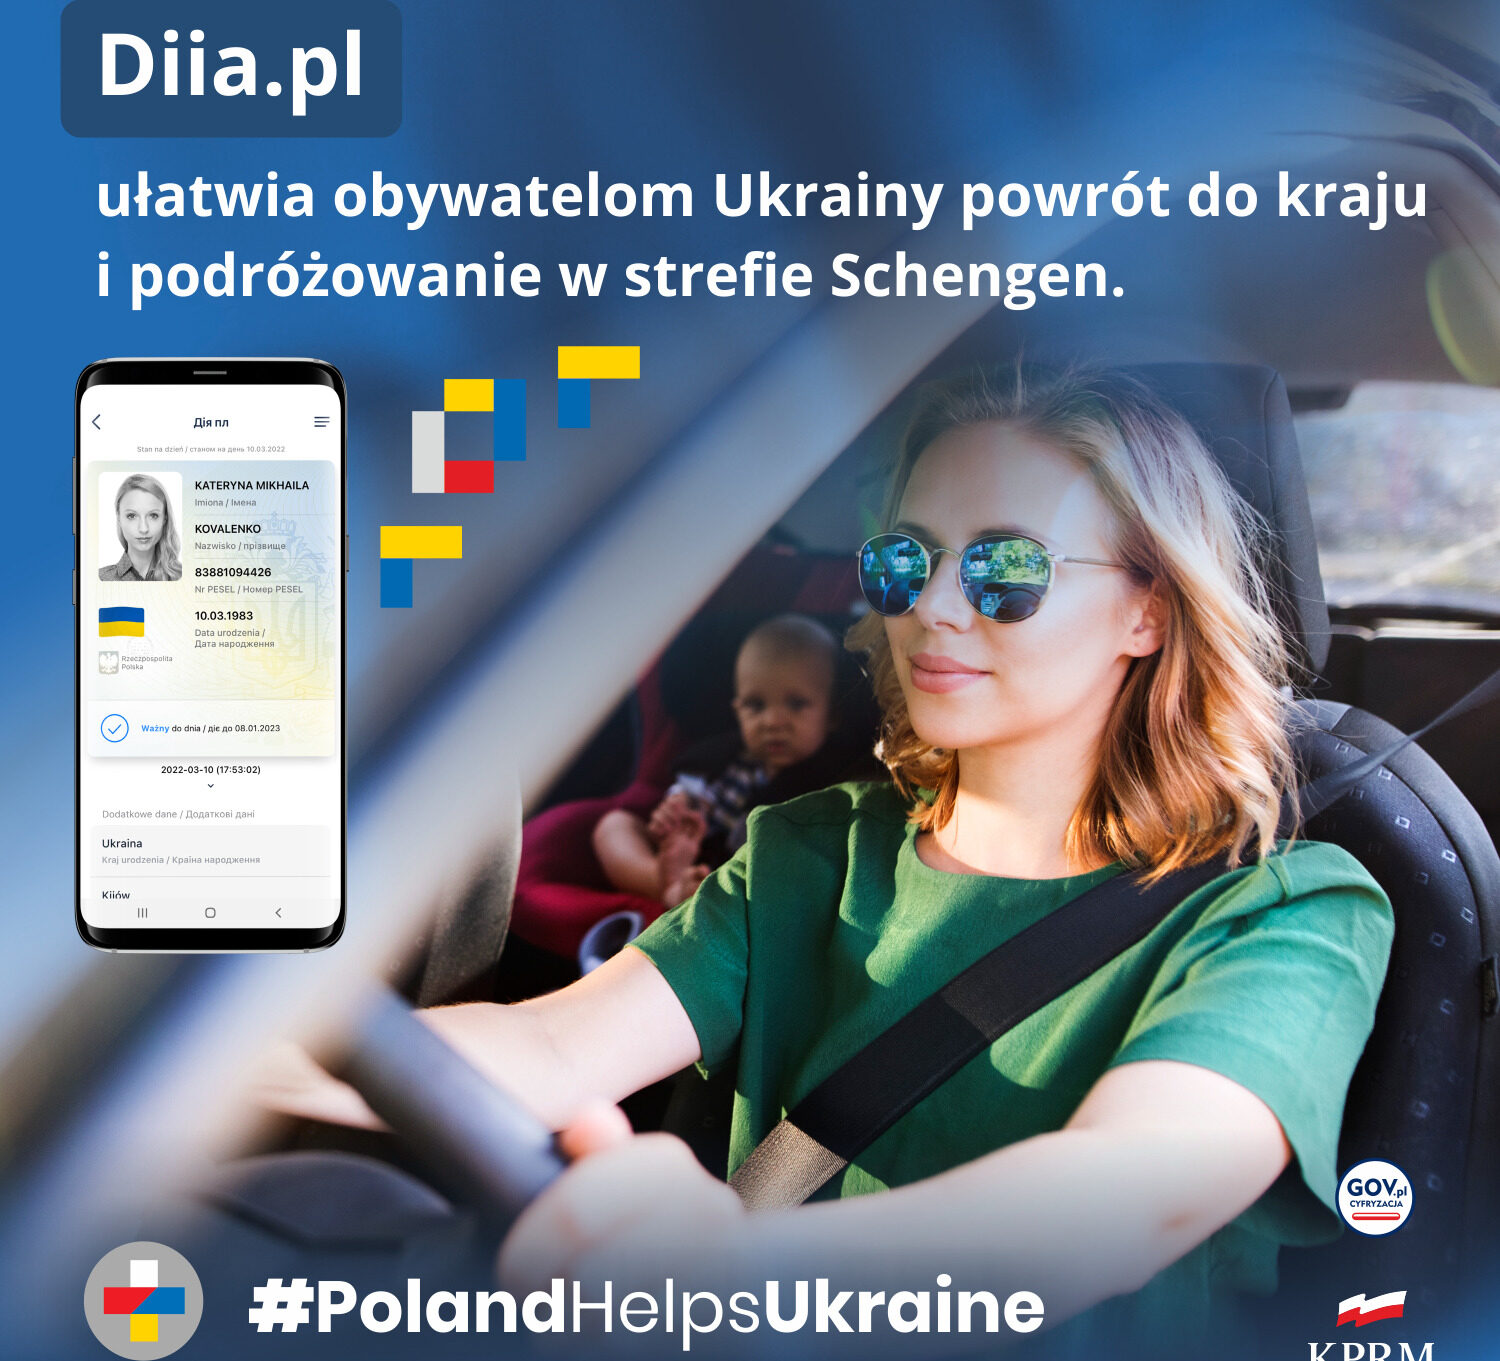 DIIA.pl ułatwia przekraczanie granic!